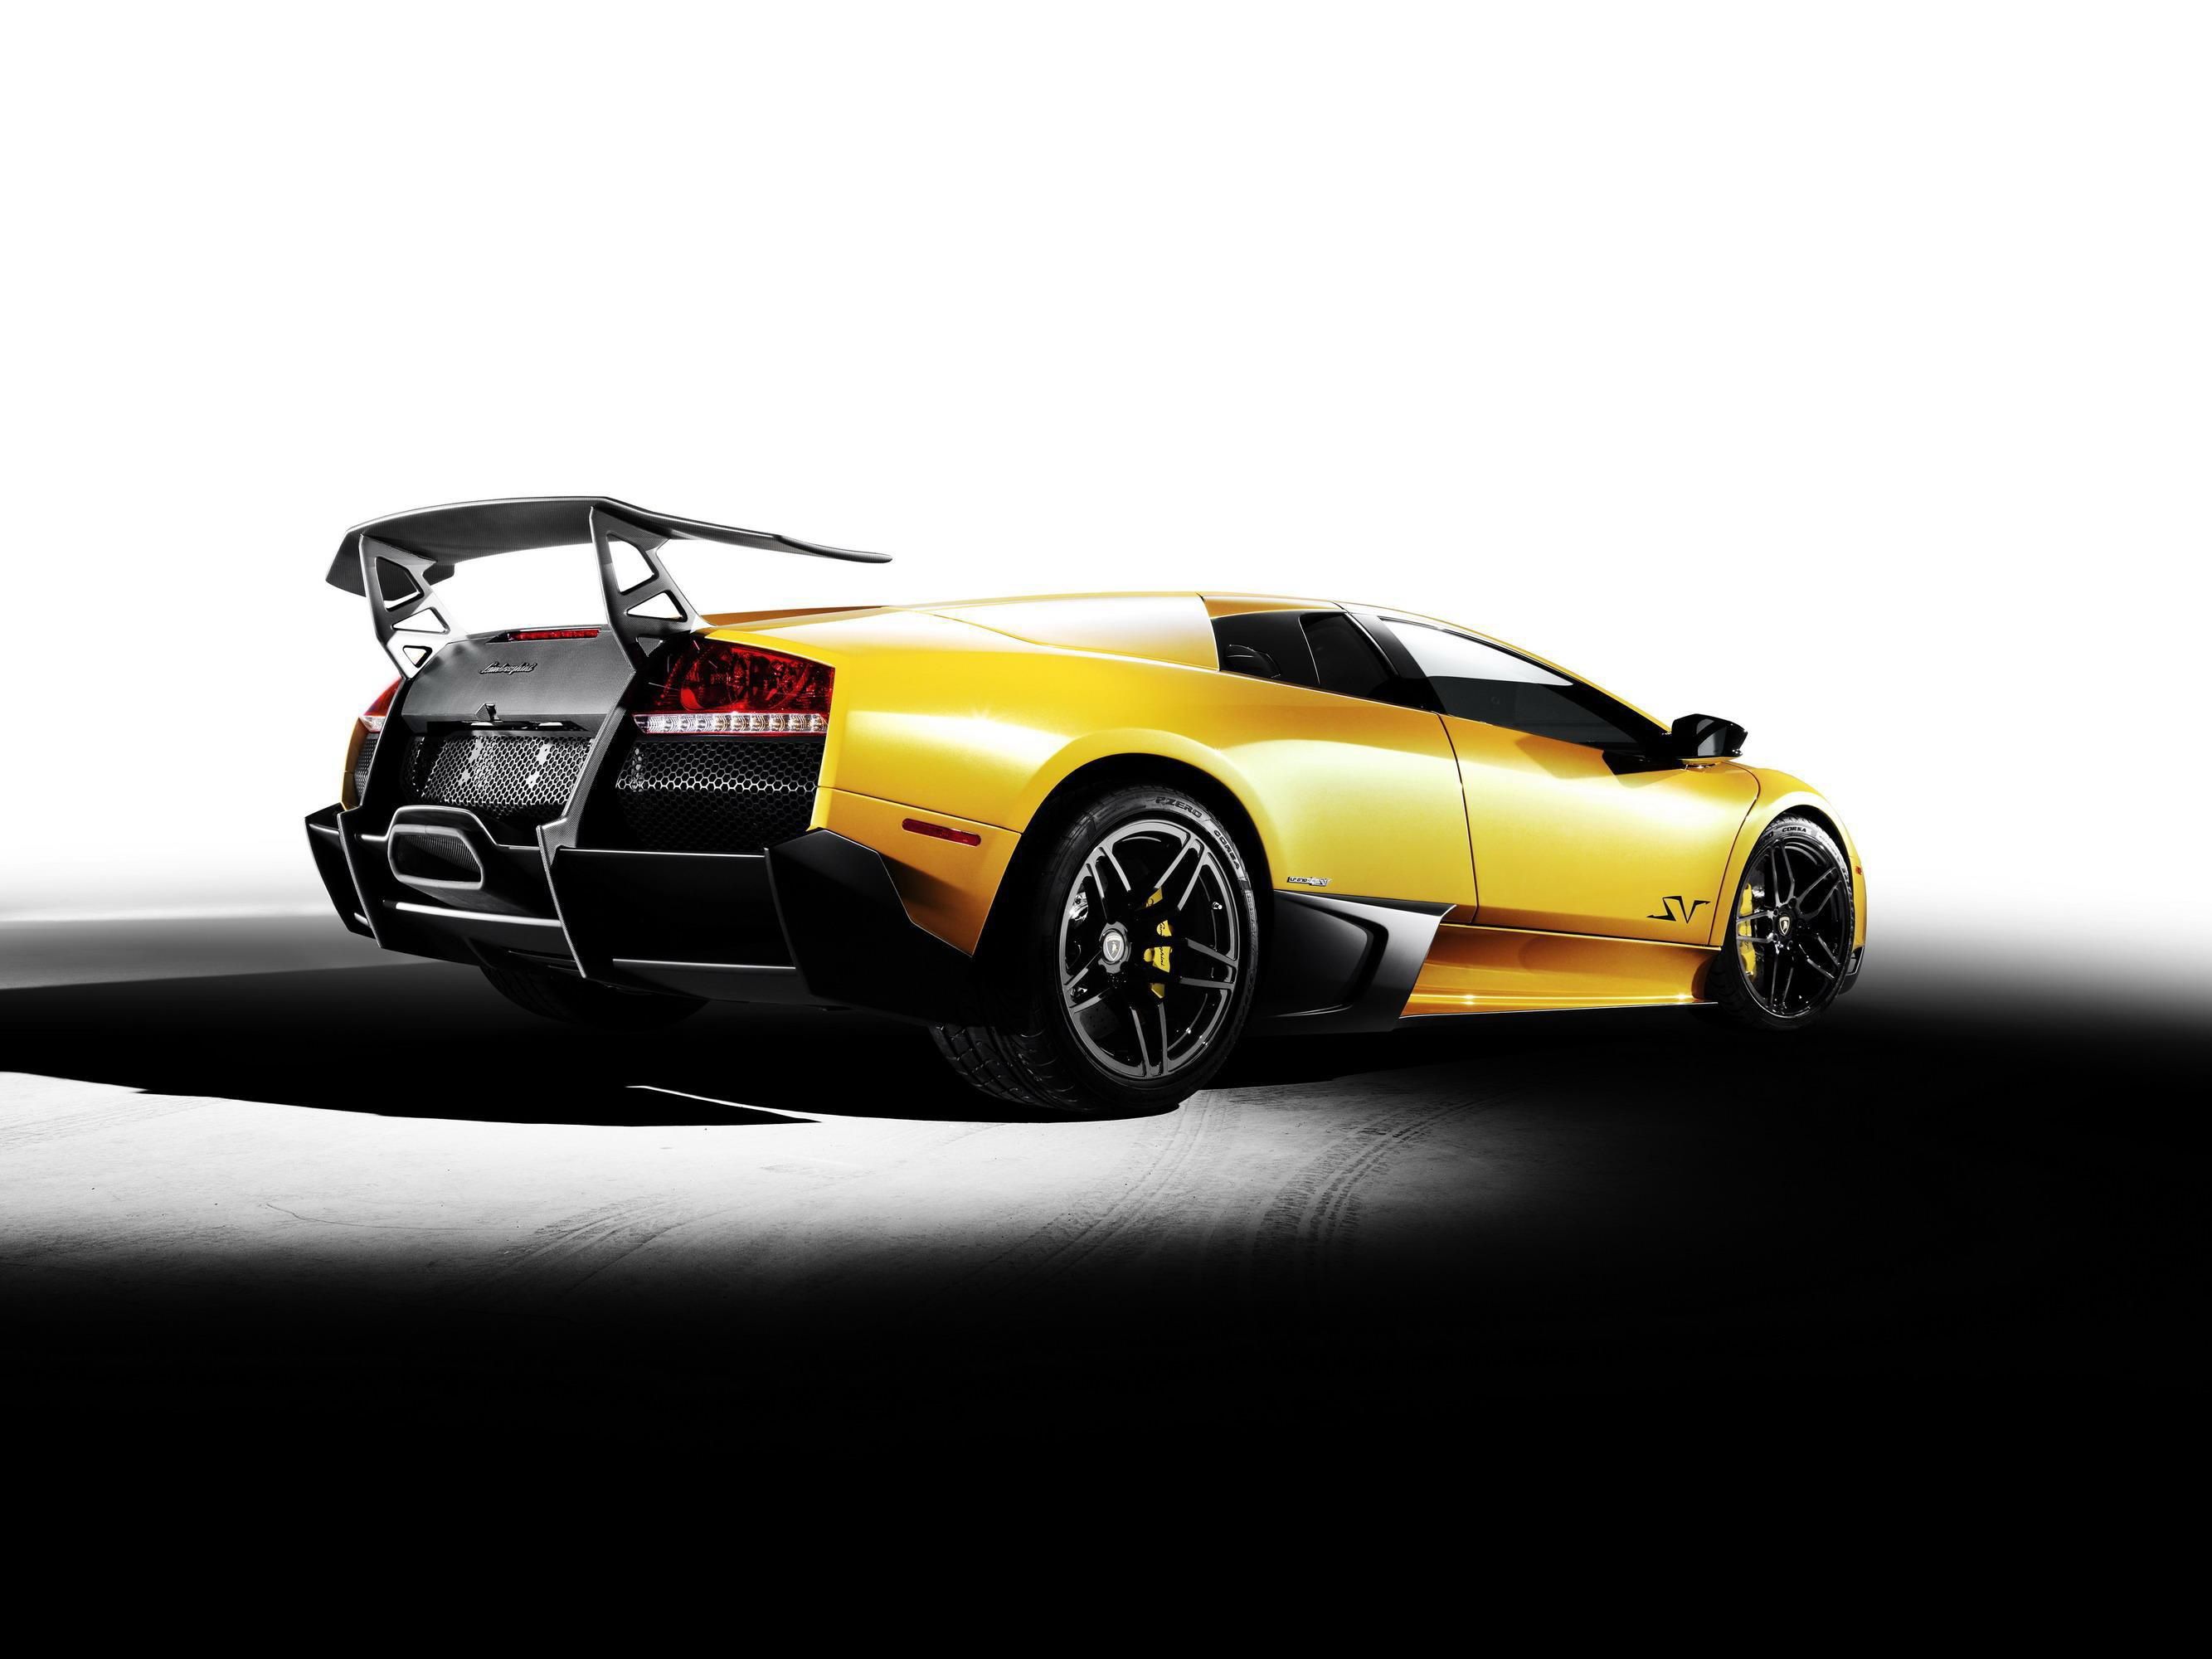 2009 - 2010 Lamborghini Murcielago LP 670-4 SuperVeloce